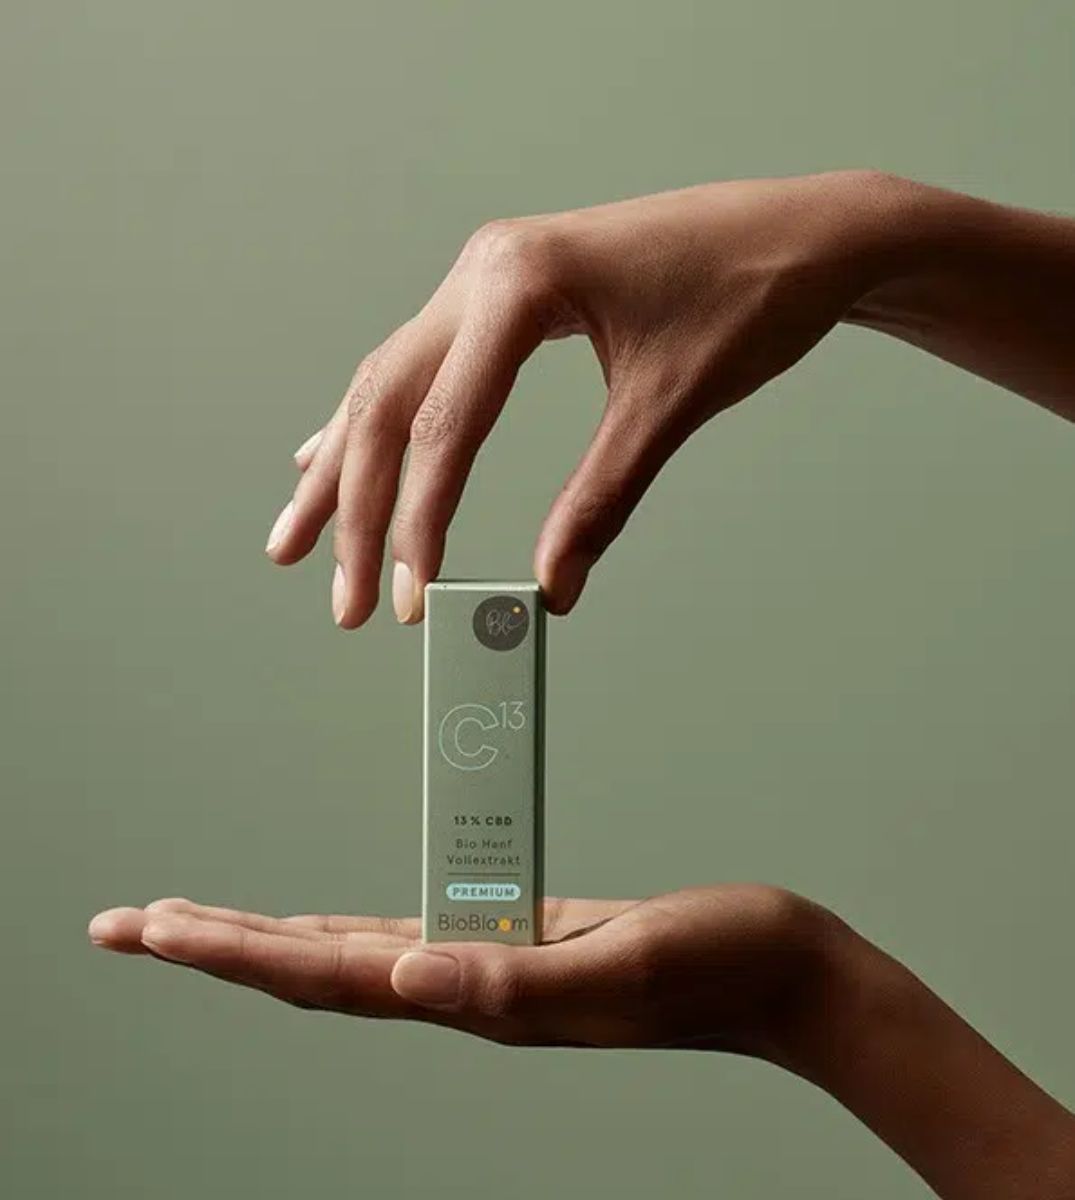 Hände präsentieren elegant die Verpackung von BioBloom C13 mit 13% CBD Vollextrakt auf einem einfarbigen olivgrünen Hintergrund